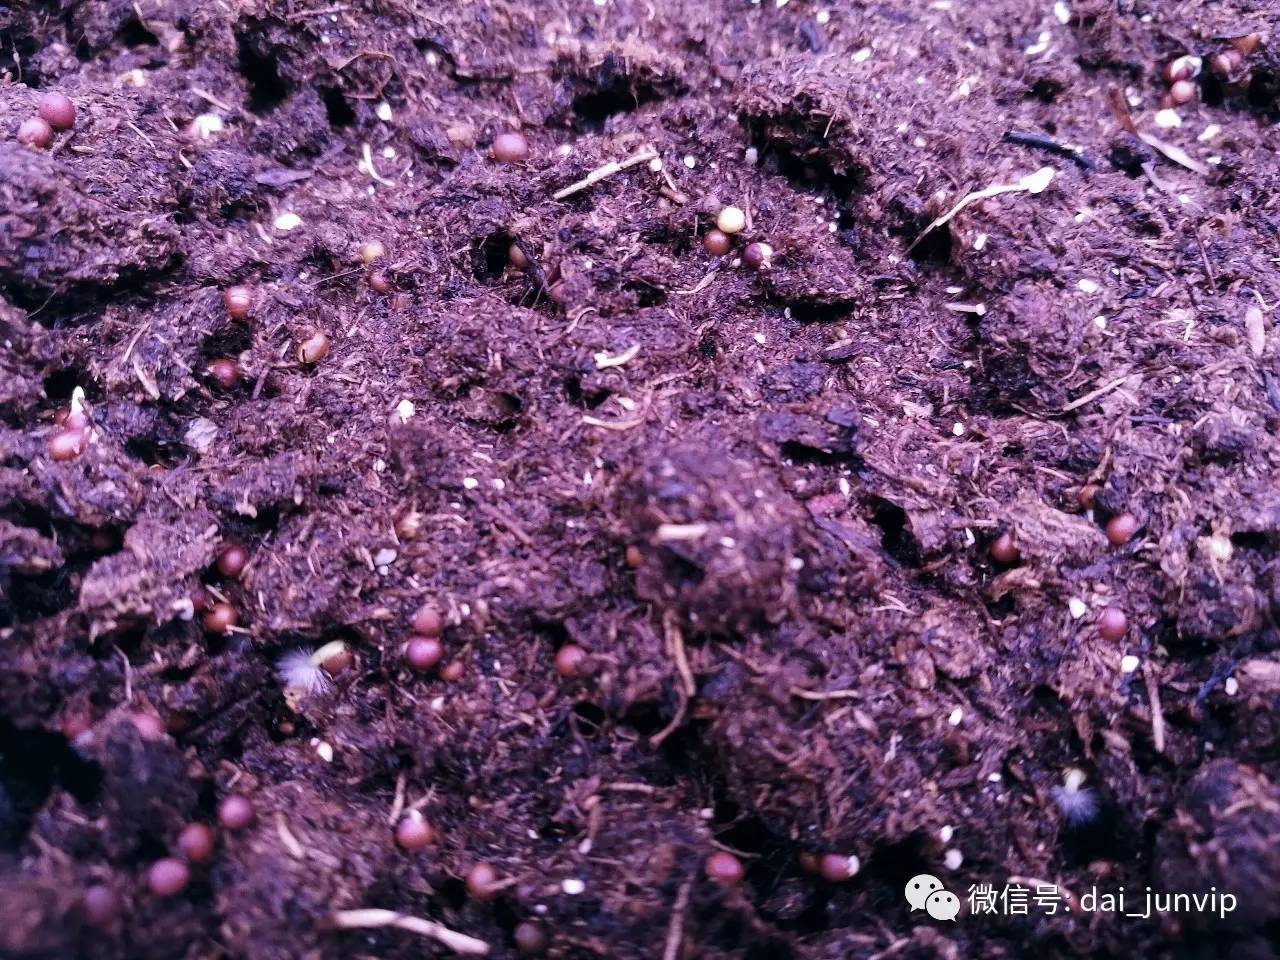 下面的这张图,就是芬兰进口的泥炭土, 特别美的紫色土壤上,长满了鲜嫩